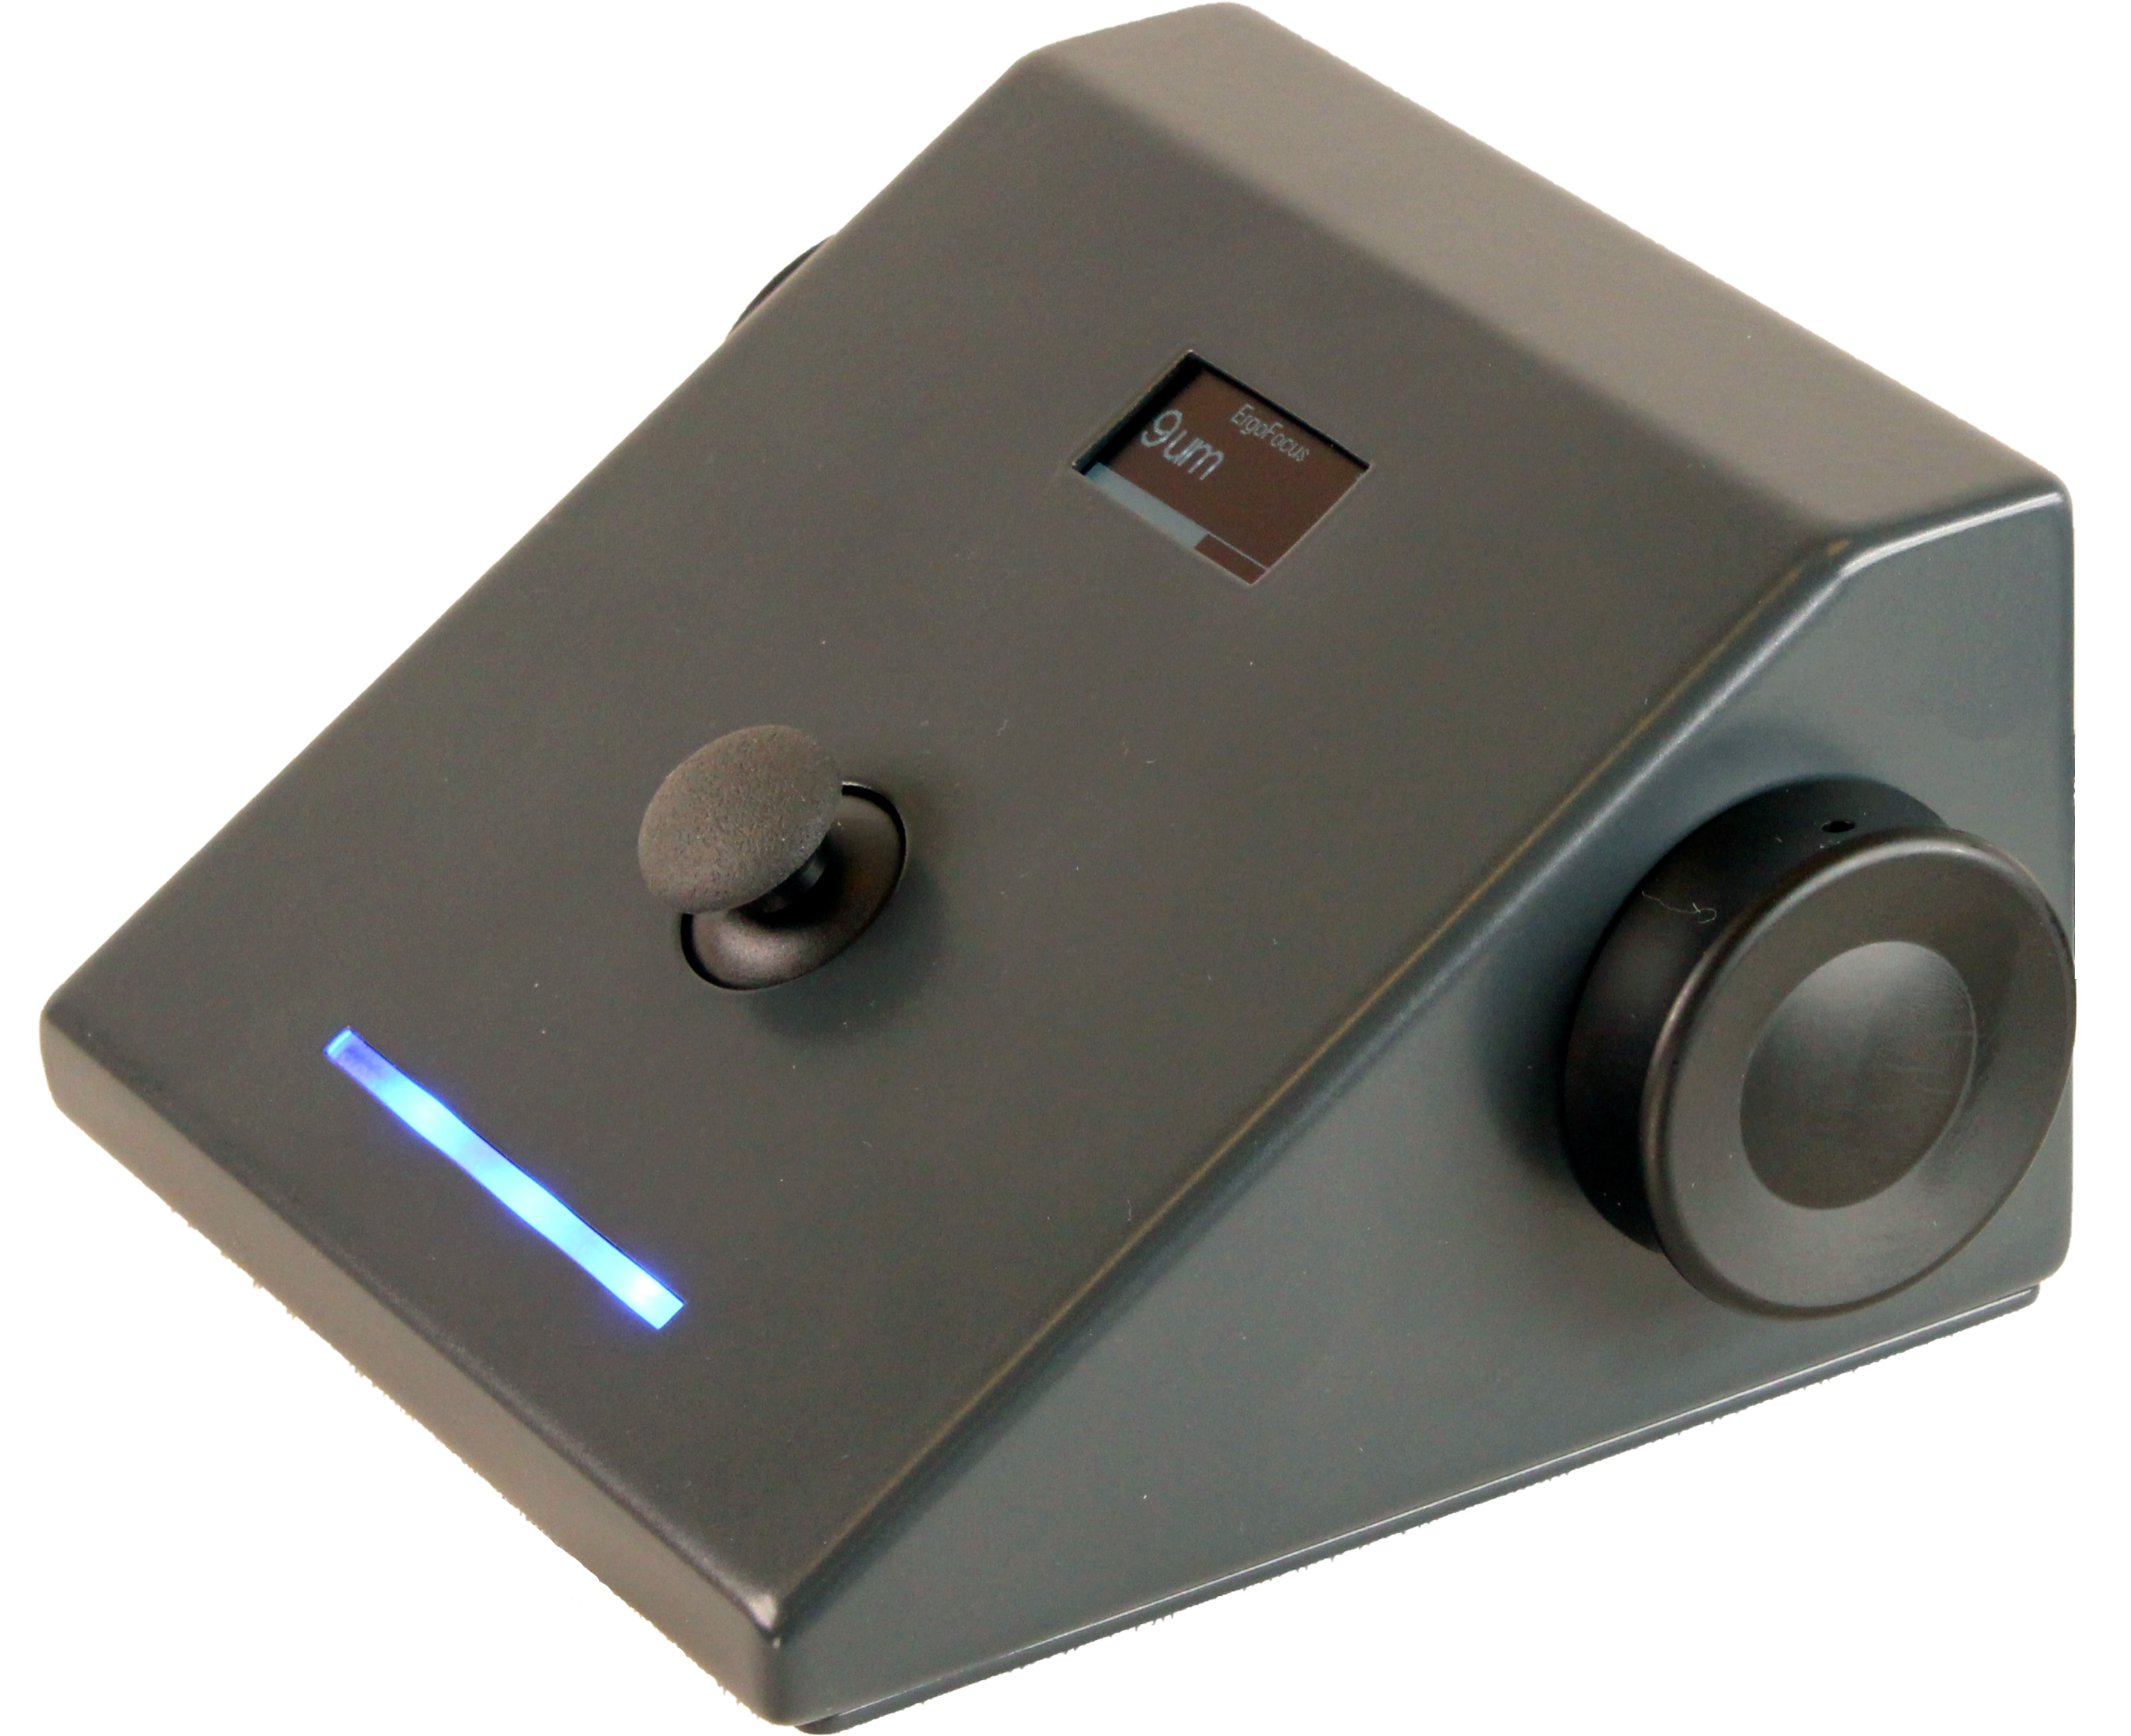 Ergonomic focus controller for microscopes